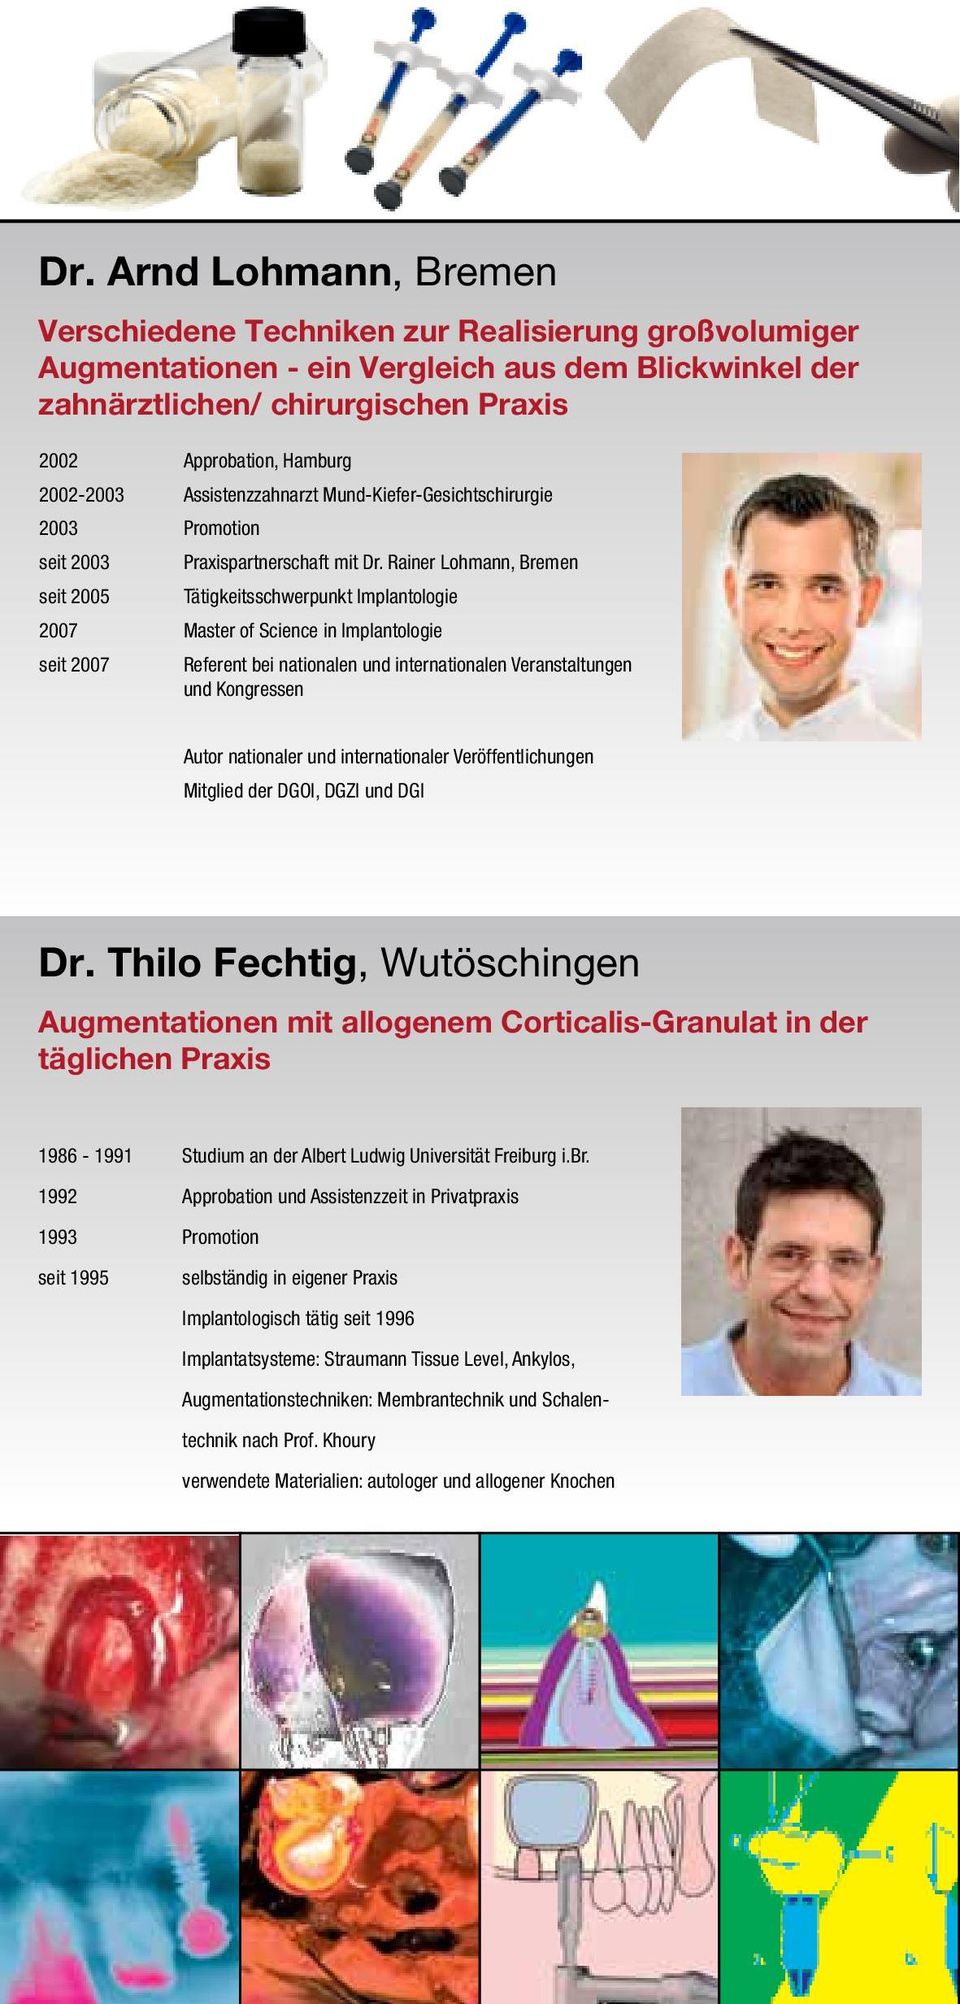 Rainer Lohmann, Bremen seit 2005 Tätigkeitsschwerpunkt Implantologie 2007 Master of Science in Implantologie seit 2007 Referent bei nationalen und internationalen Veranstaltungen und Kongressen Autor